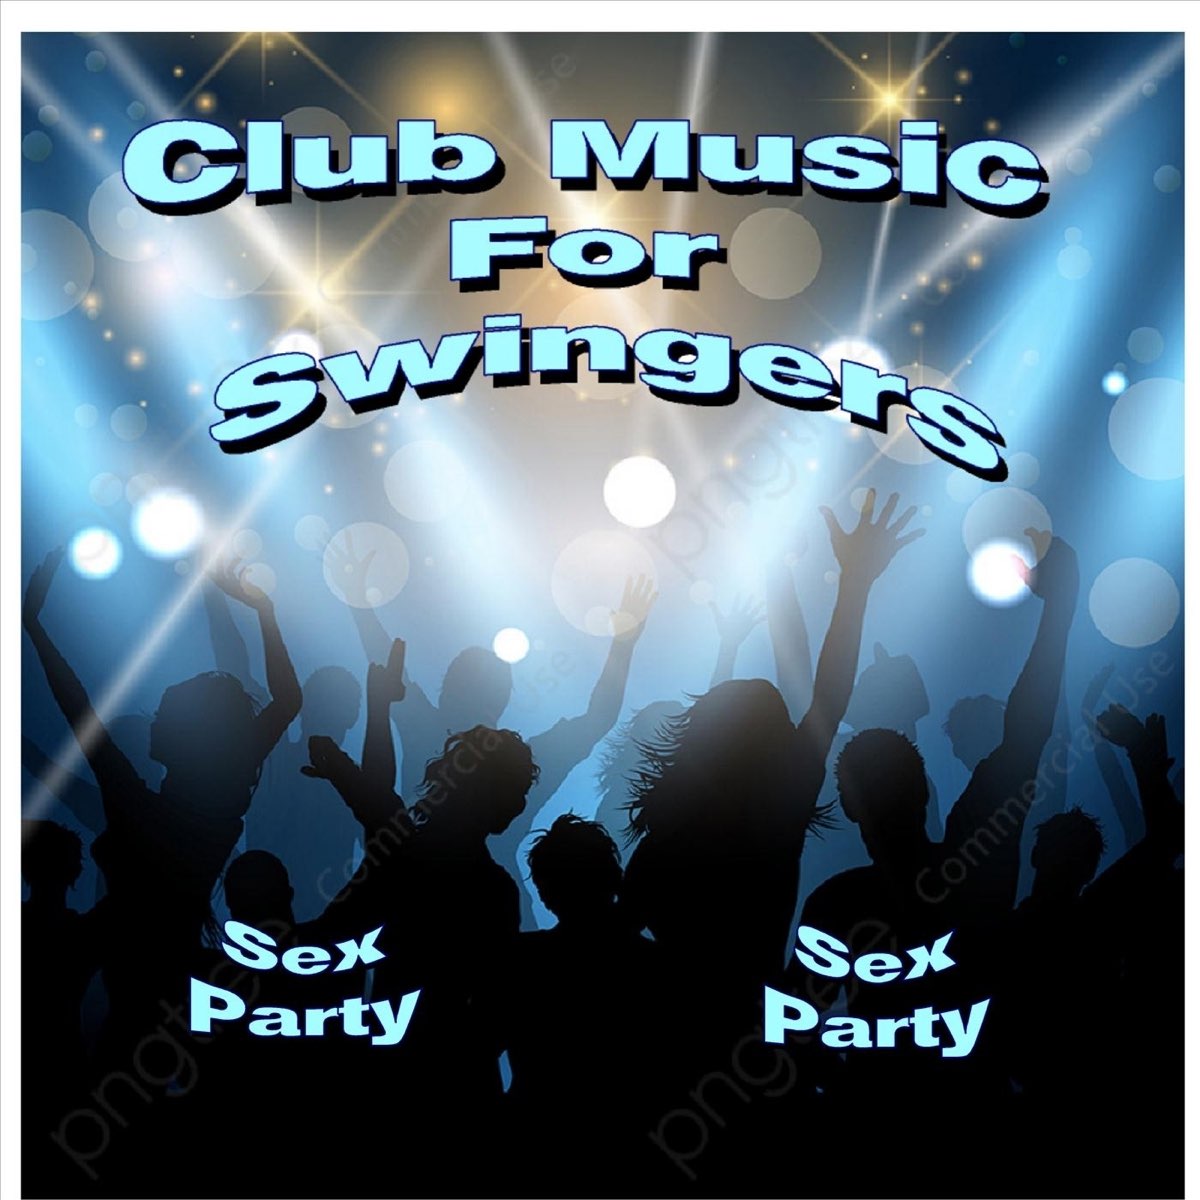 Club Music for Swingers Sex Party - Album by Triplexxxsounds